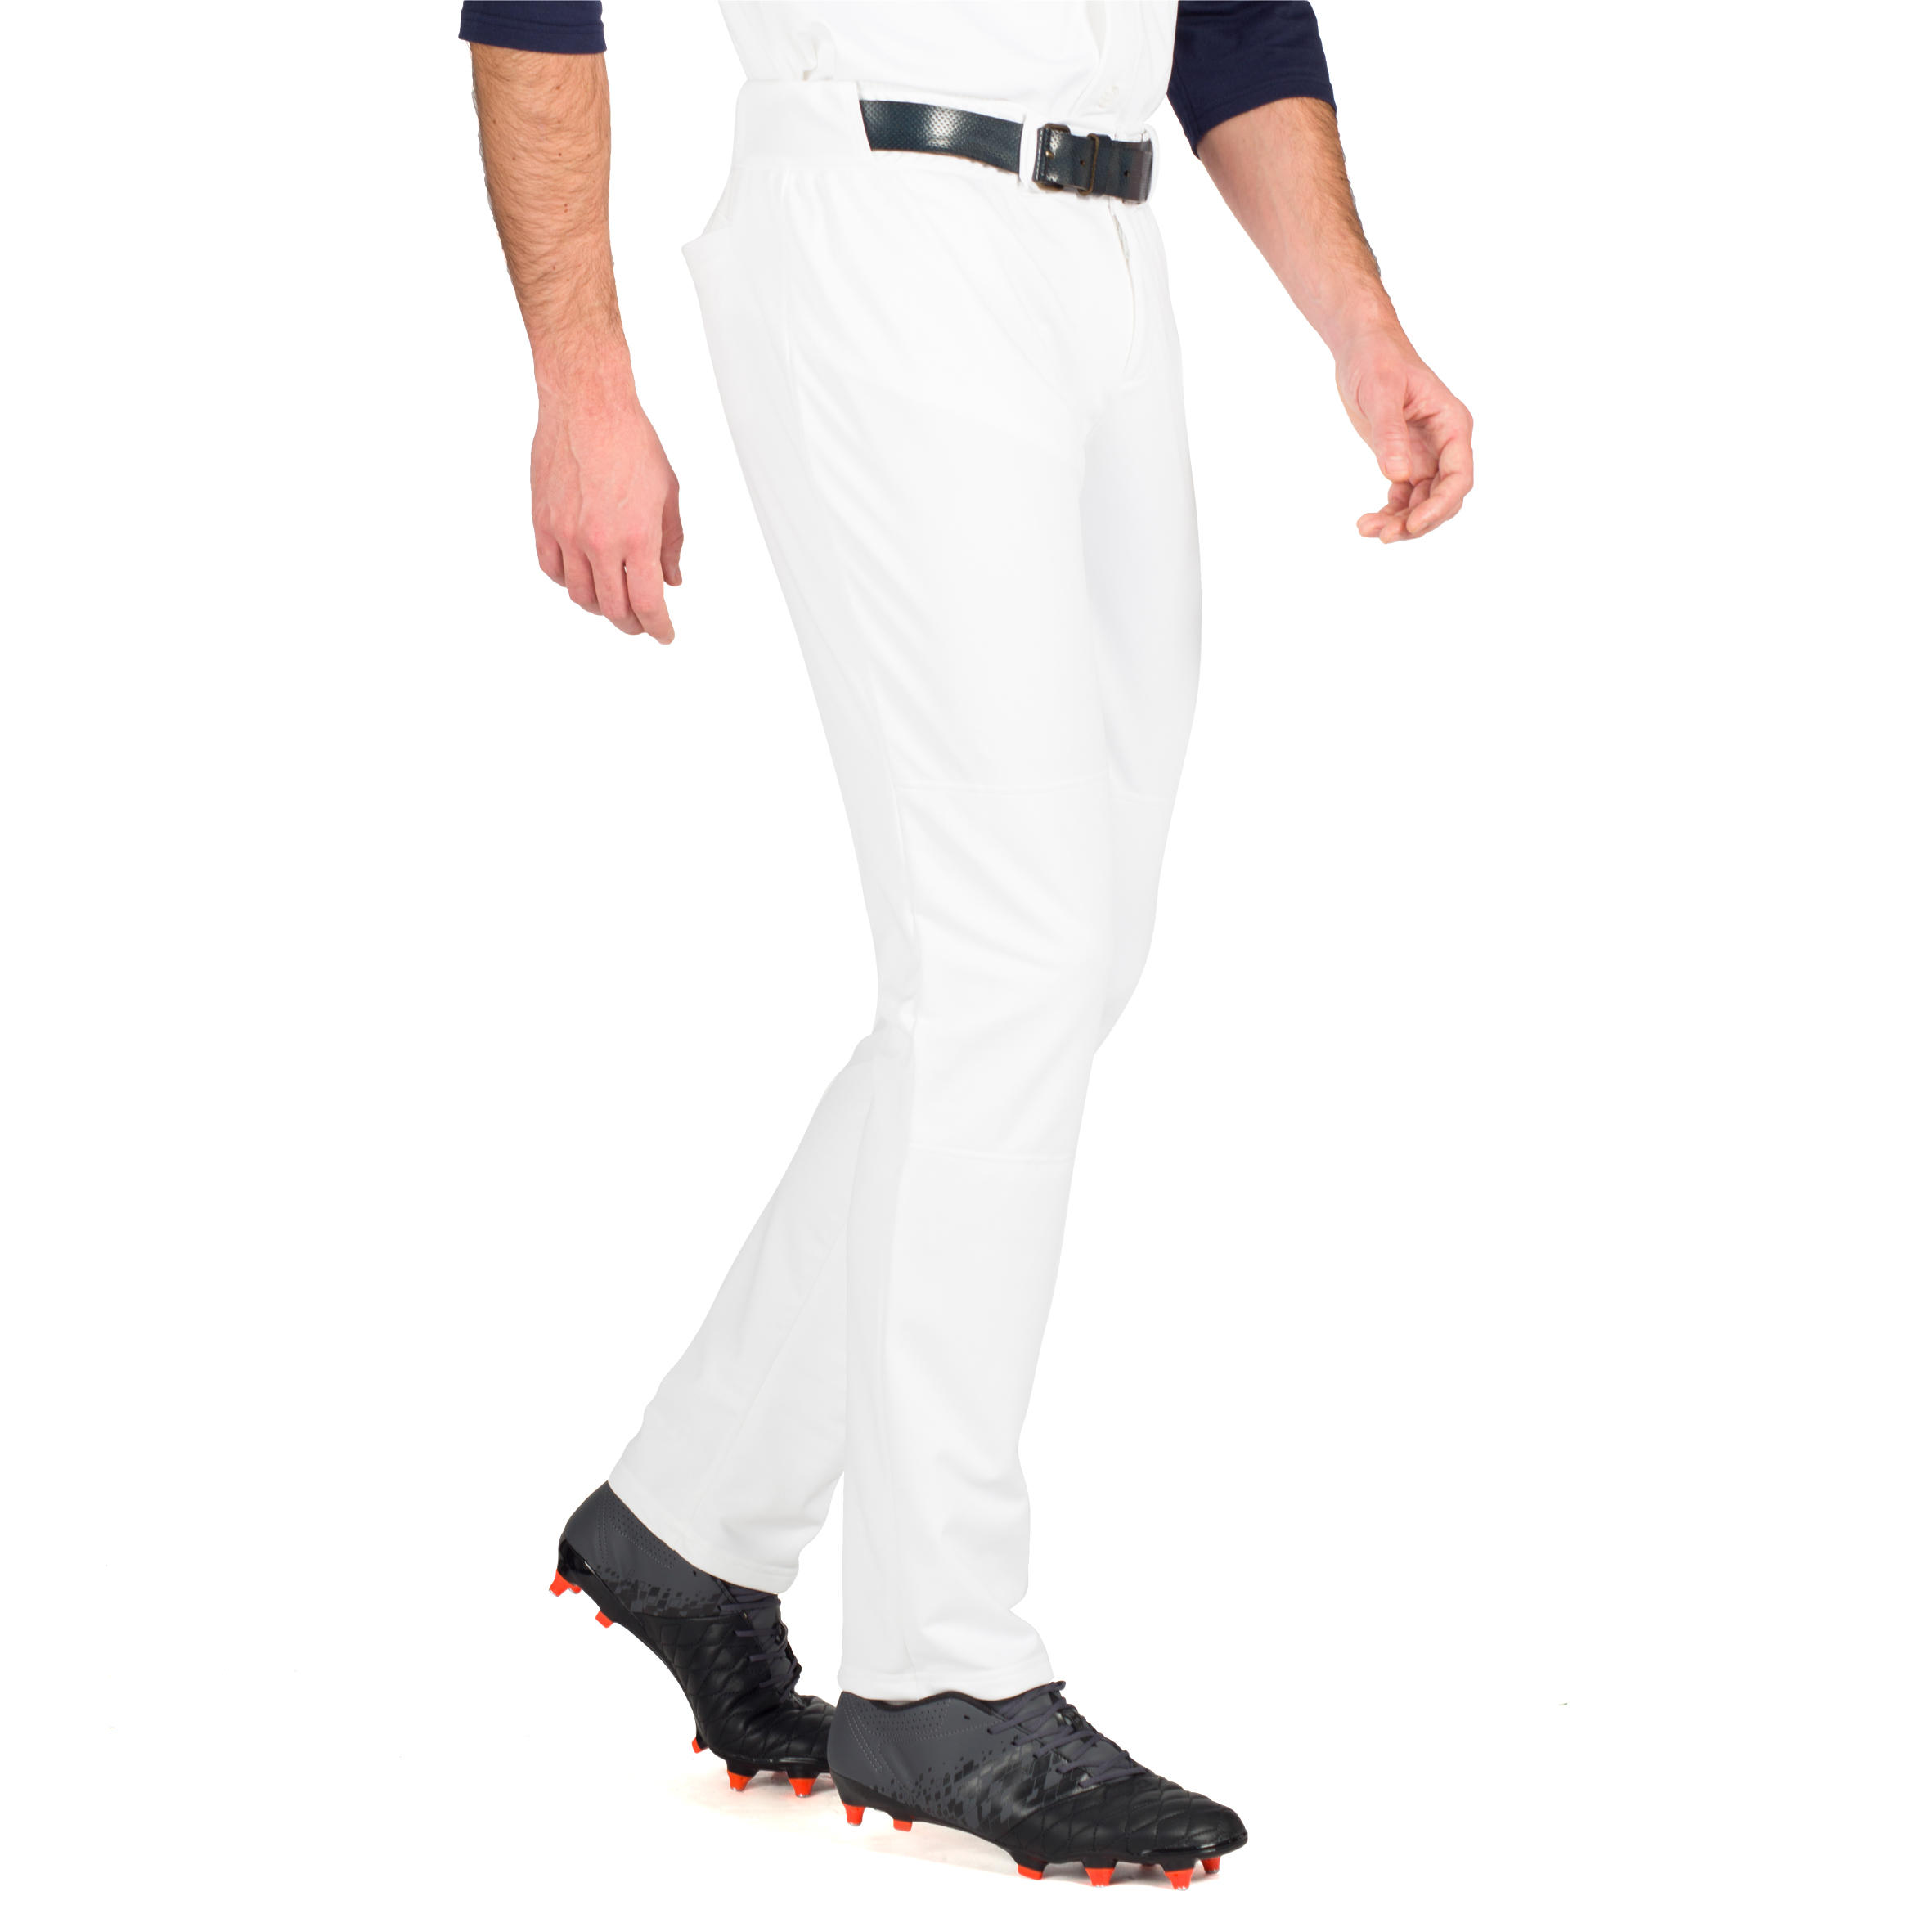 BA 550 Adult Baseball Pants - White 8/11